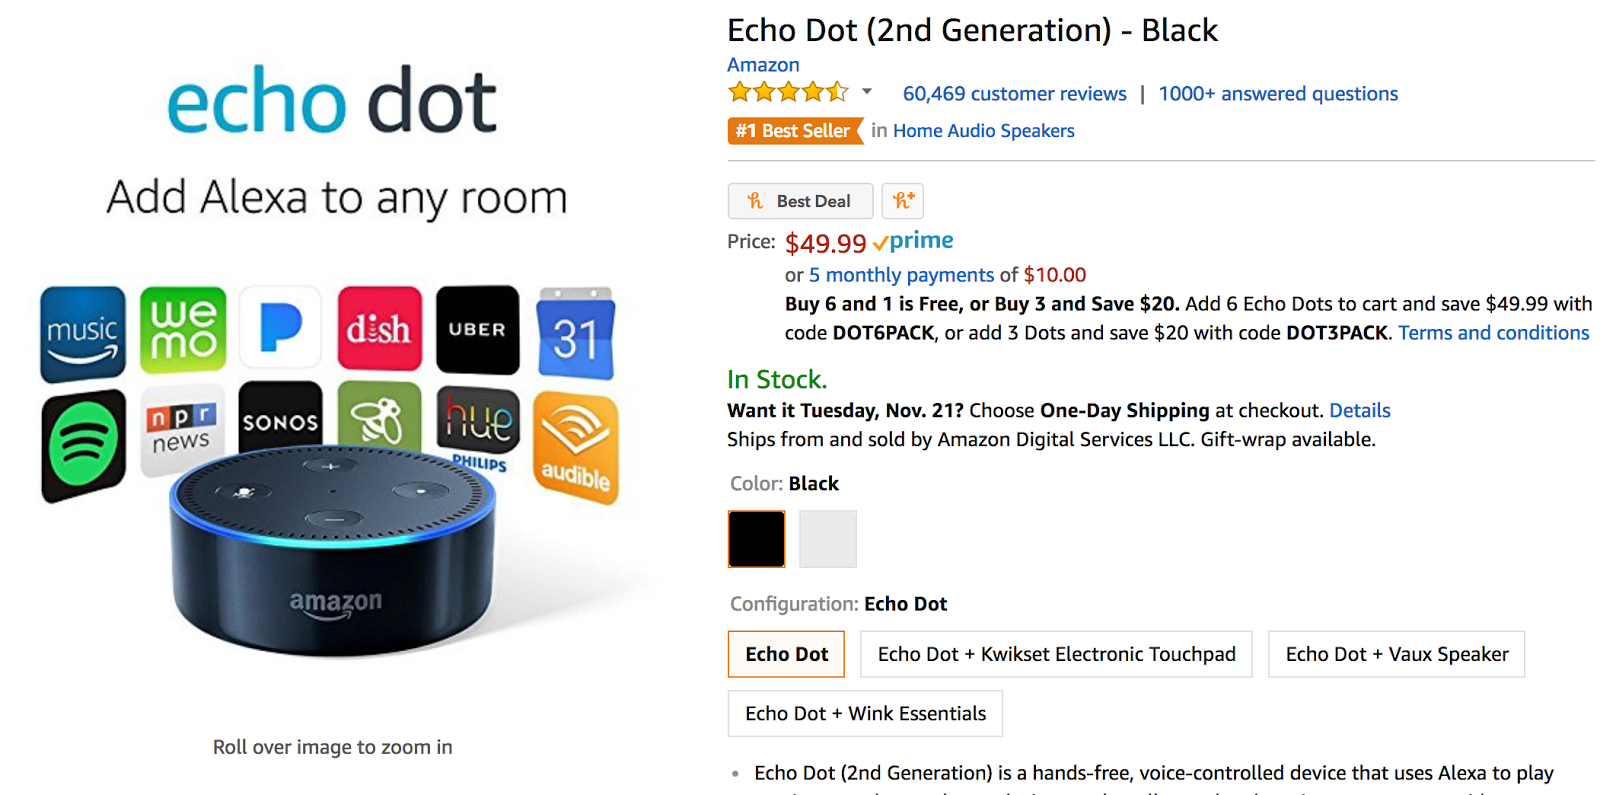 Amazon Echo Dot Add Alexa to any room